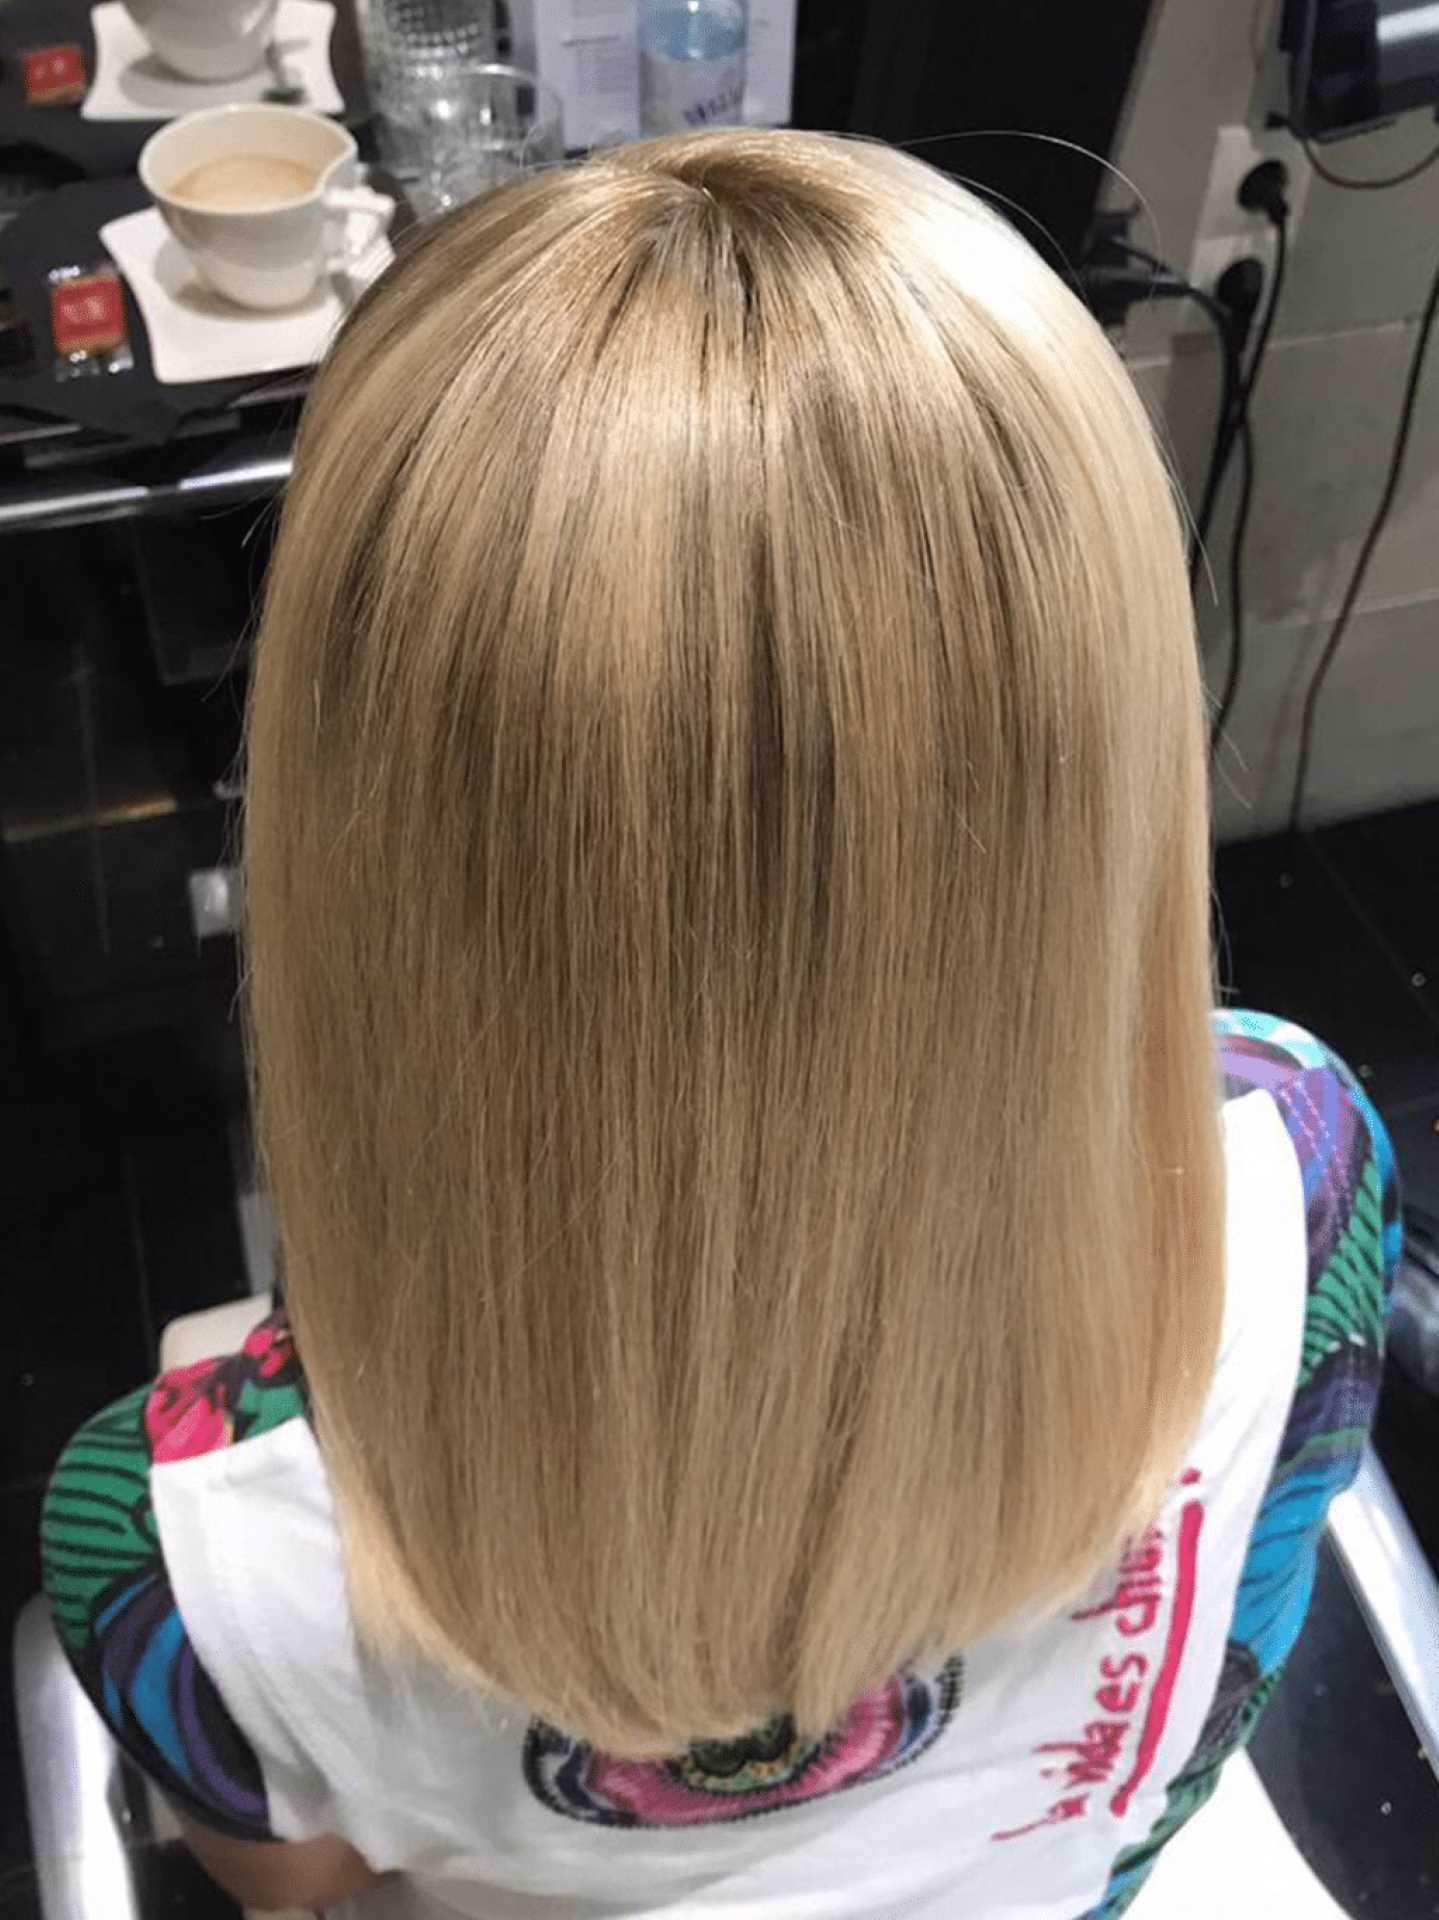 Nach einer Haarverdichtung bei einer Frau mit blonden Haaren